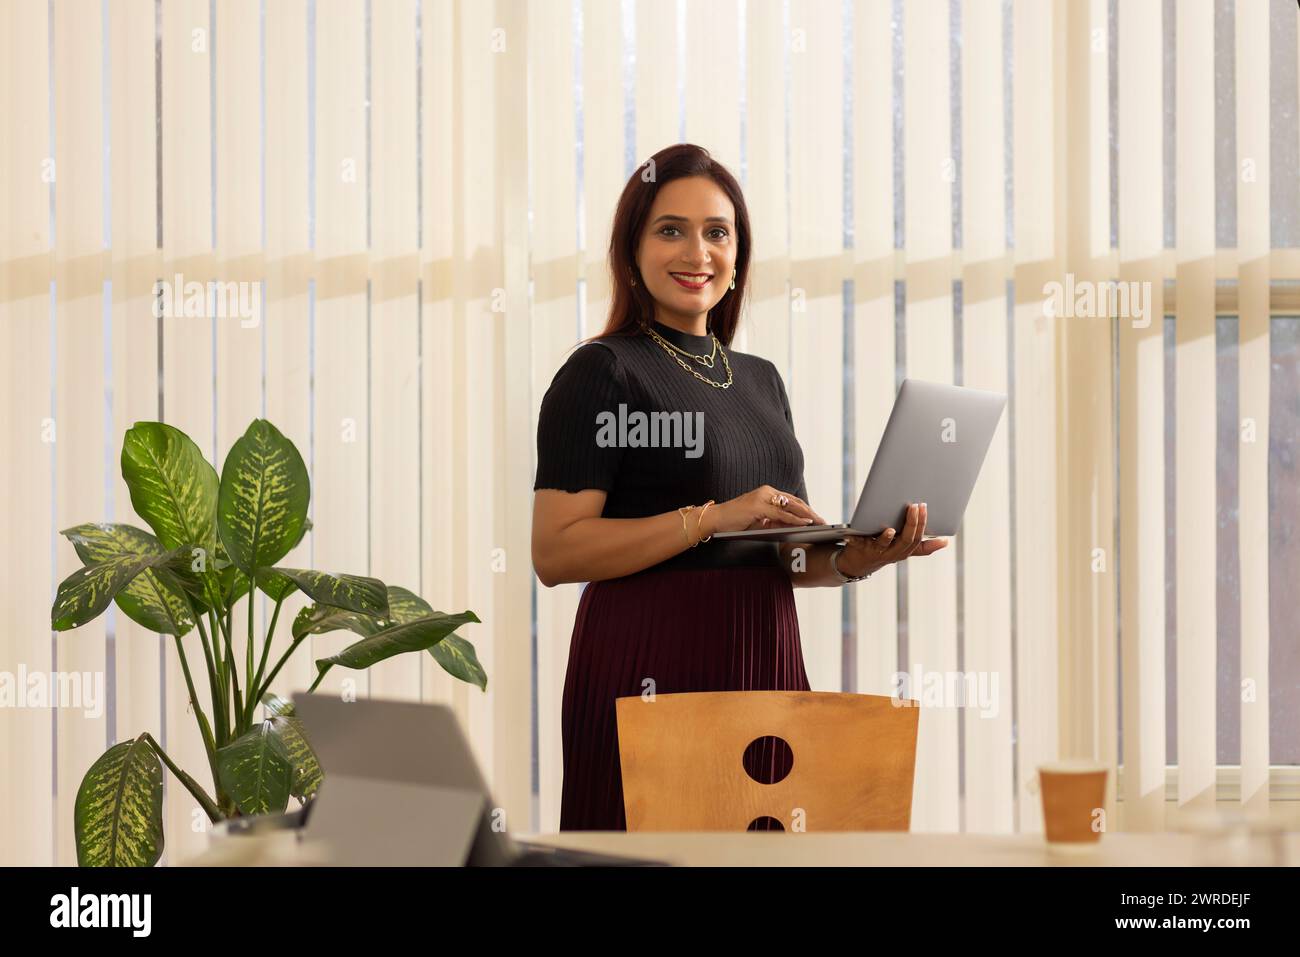 Femme entrepreneure souriante avec ordinateur portable debout dans le bureau Banque D'Images